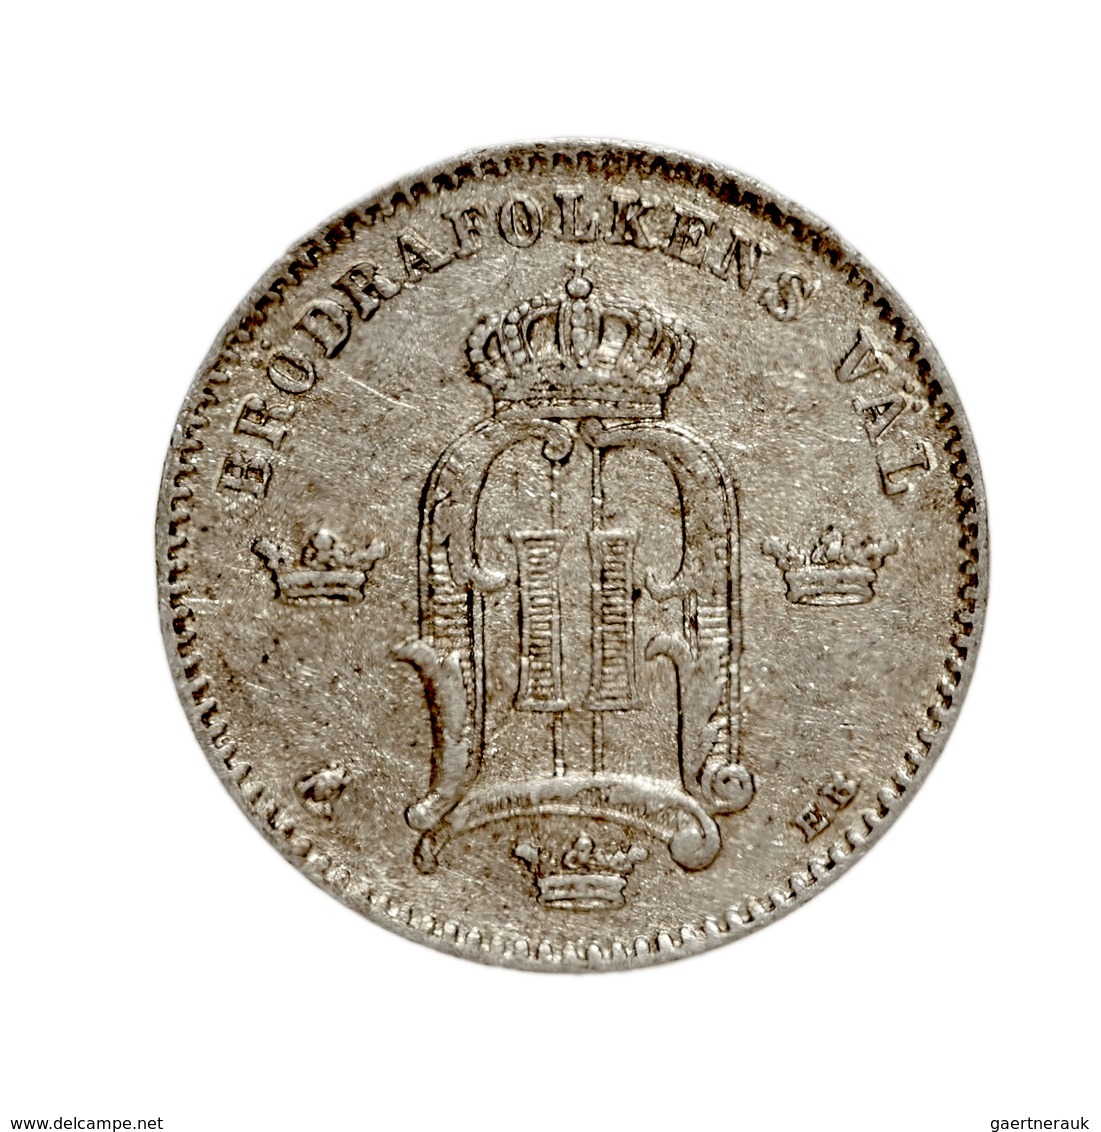 Schweden: Lot 2 Münzen: 25 Öre Von 1899 Und 10 Öre Von 1884 Jeweils In Vorzüglicher Erhaltung. - Sweden